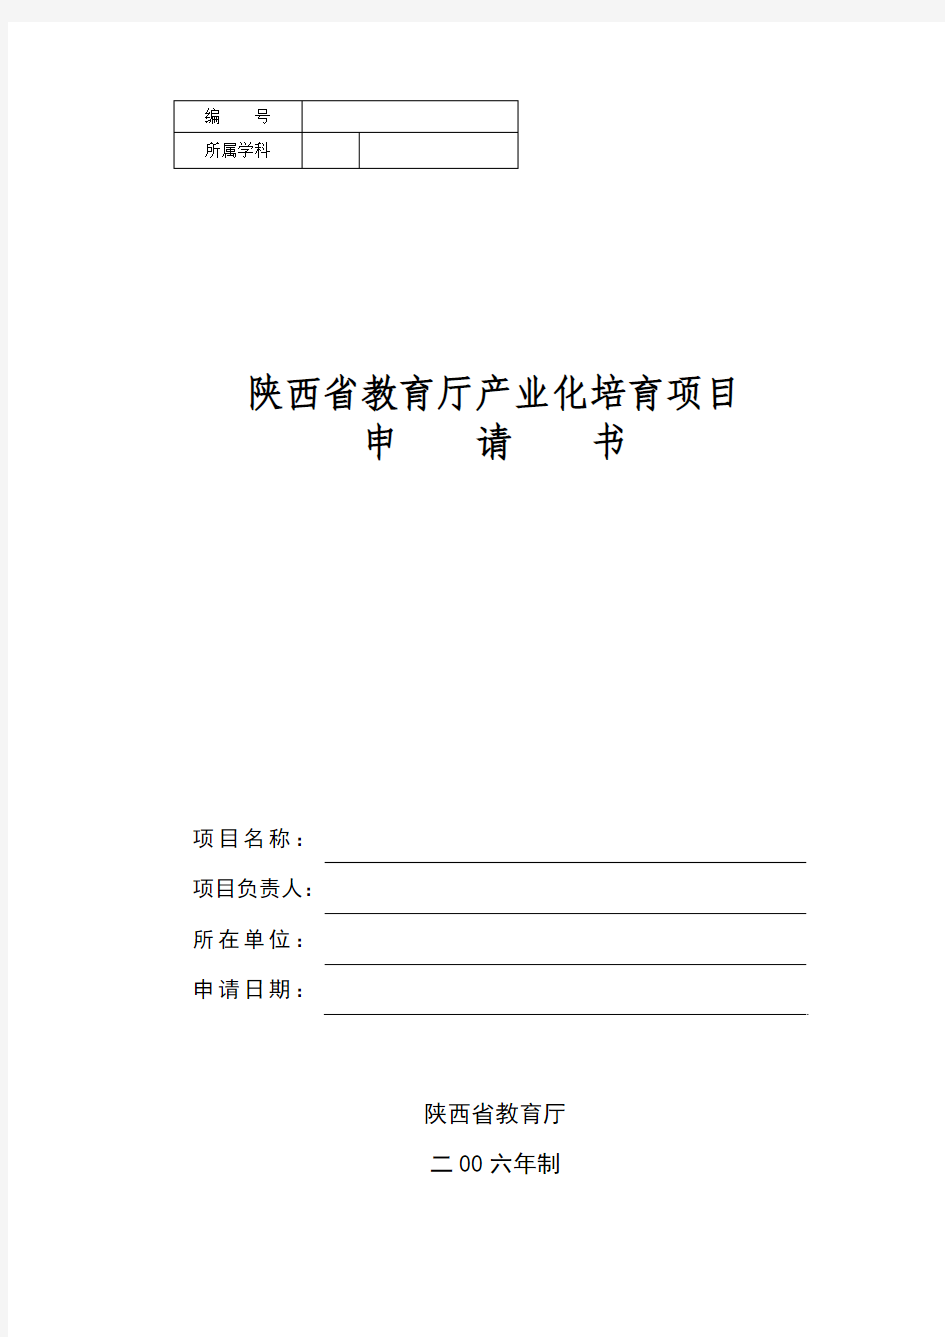 陕西省教育厅产业化培育项目申请书(模版)